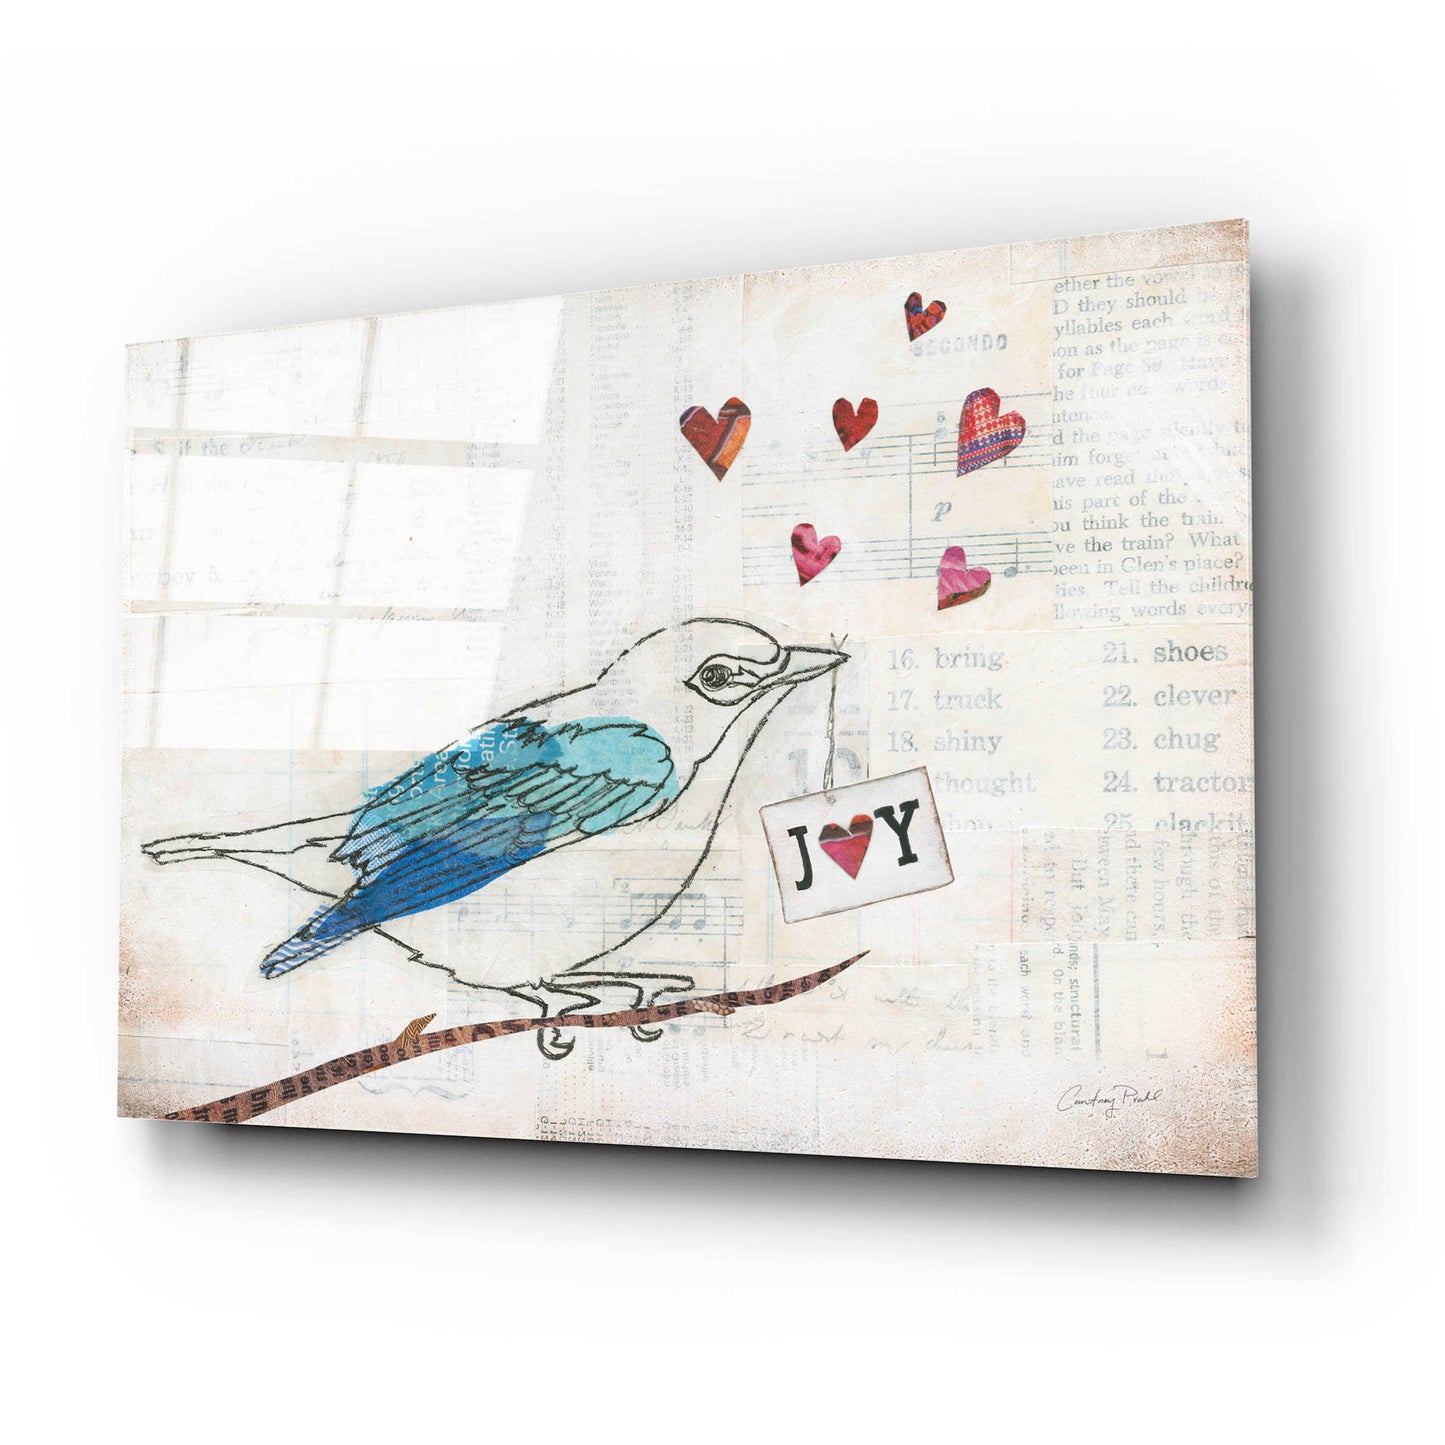 Epic Art 'Love Birds I Joy' by Courtney Prahl, Acrylic Glass Wall Art,24x16